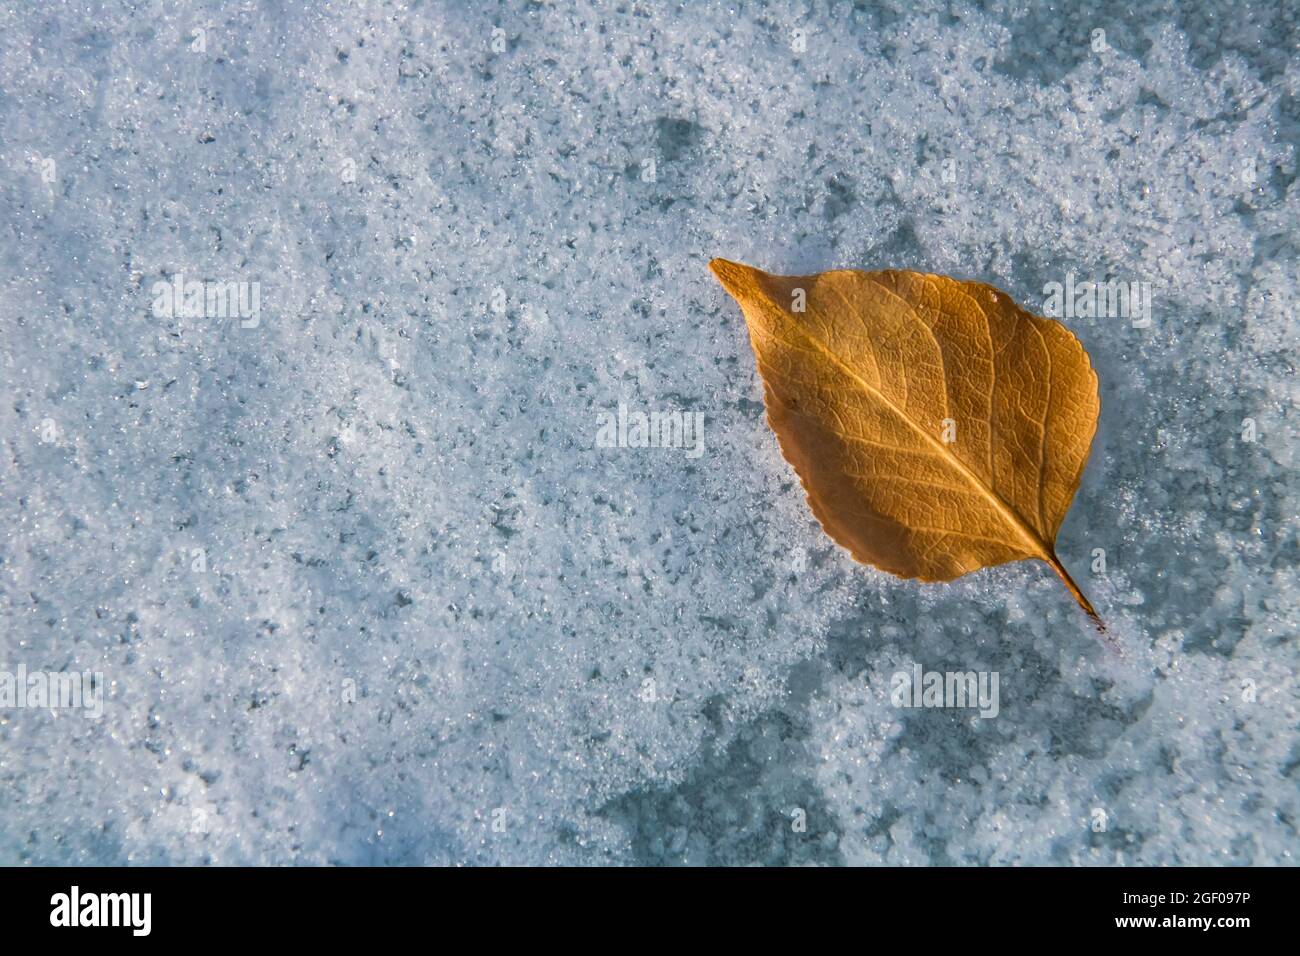 Vue de haut en bas d'une feuille d'automne tombée sur un lac gelé. Modifications du concept de saison Banque D'Images